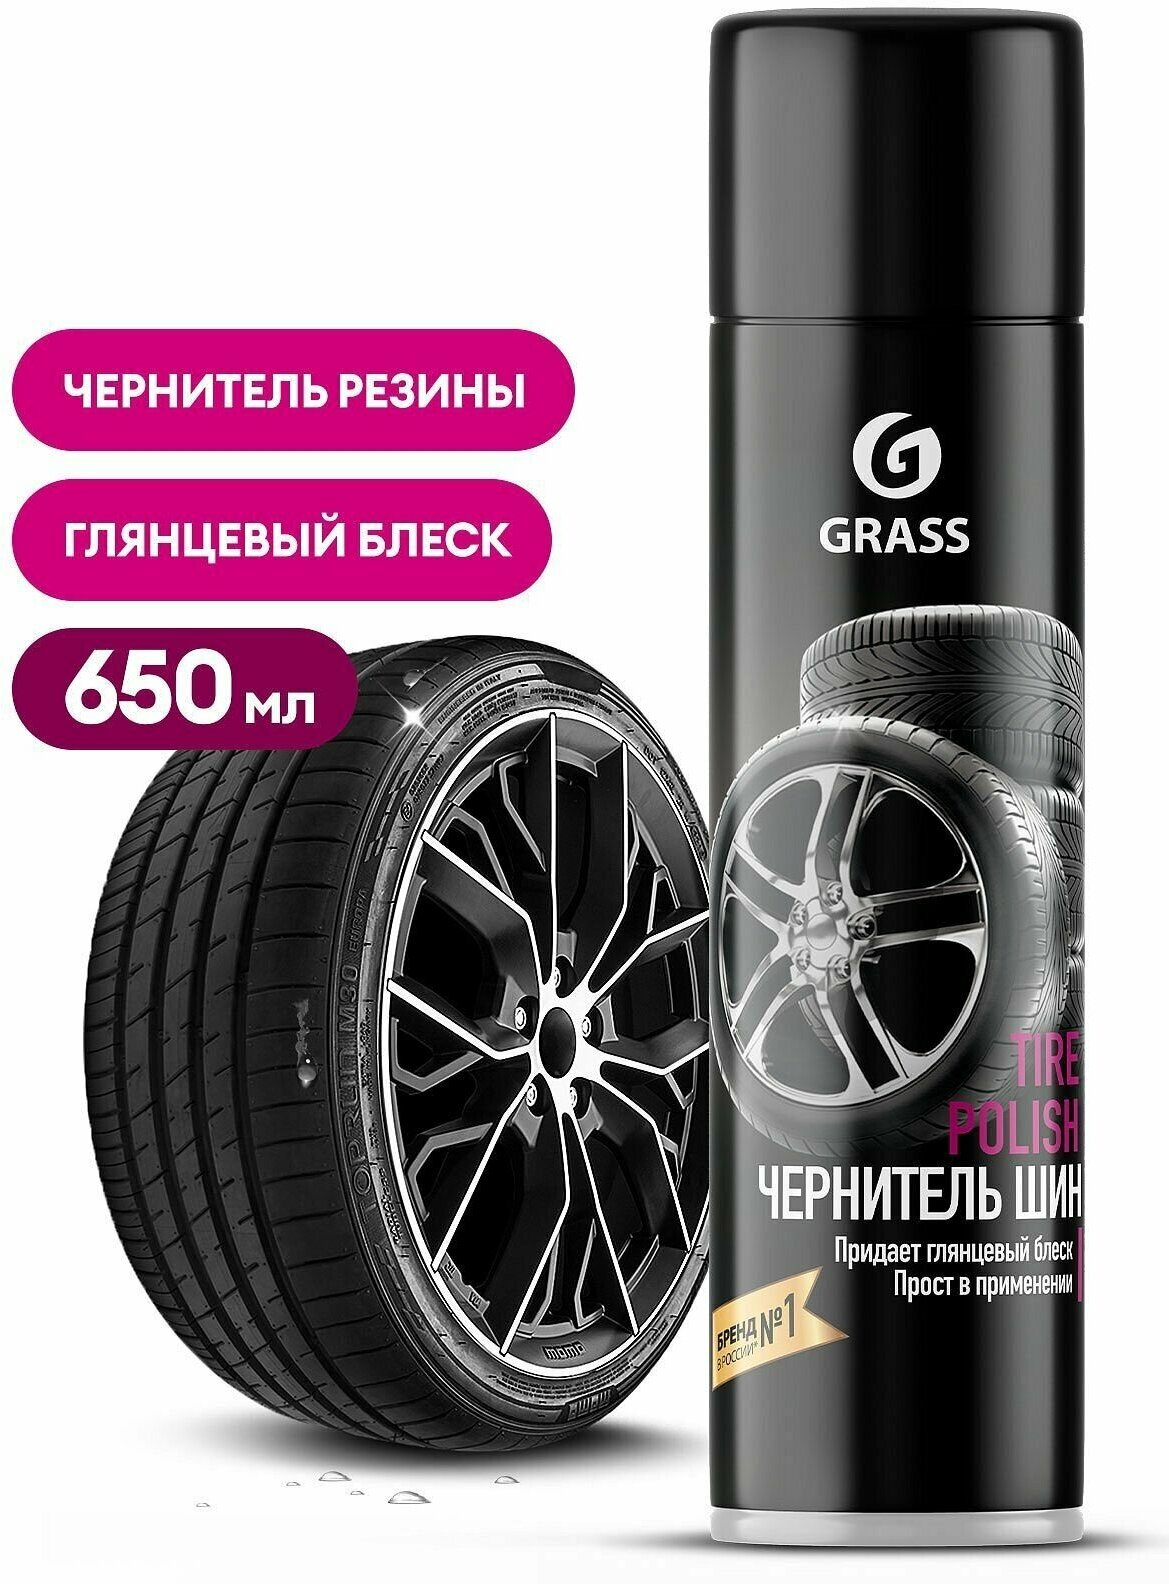 Чернитель шин "Tire Polish" 650 мл